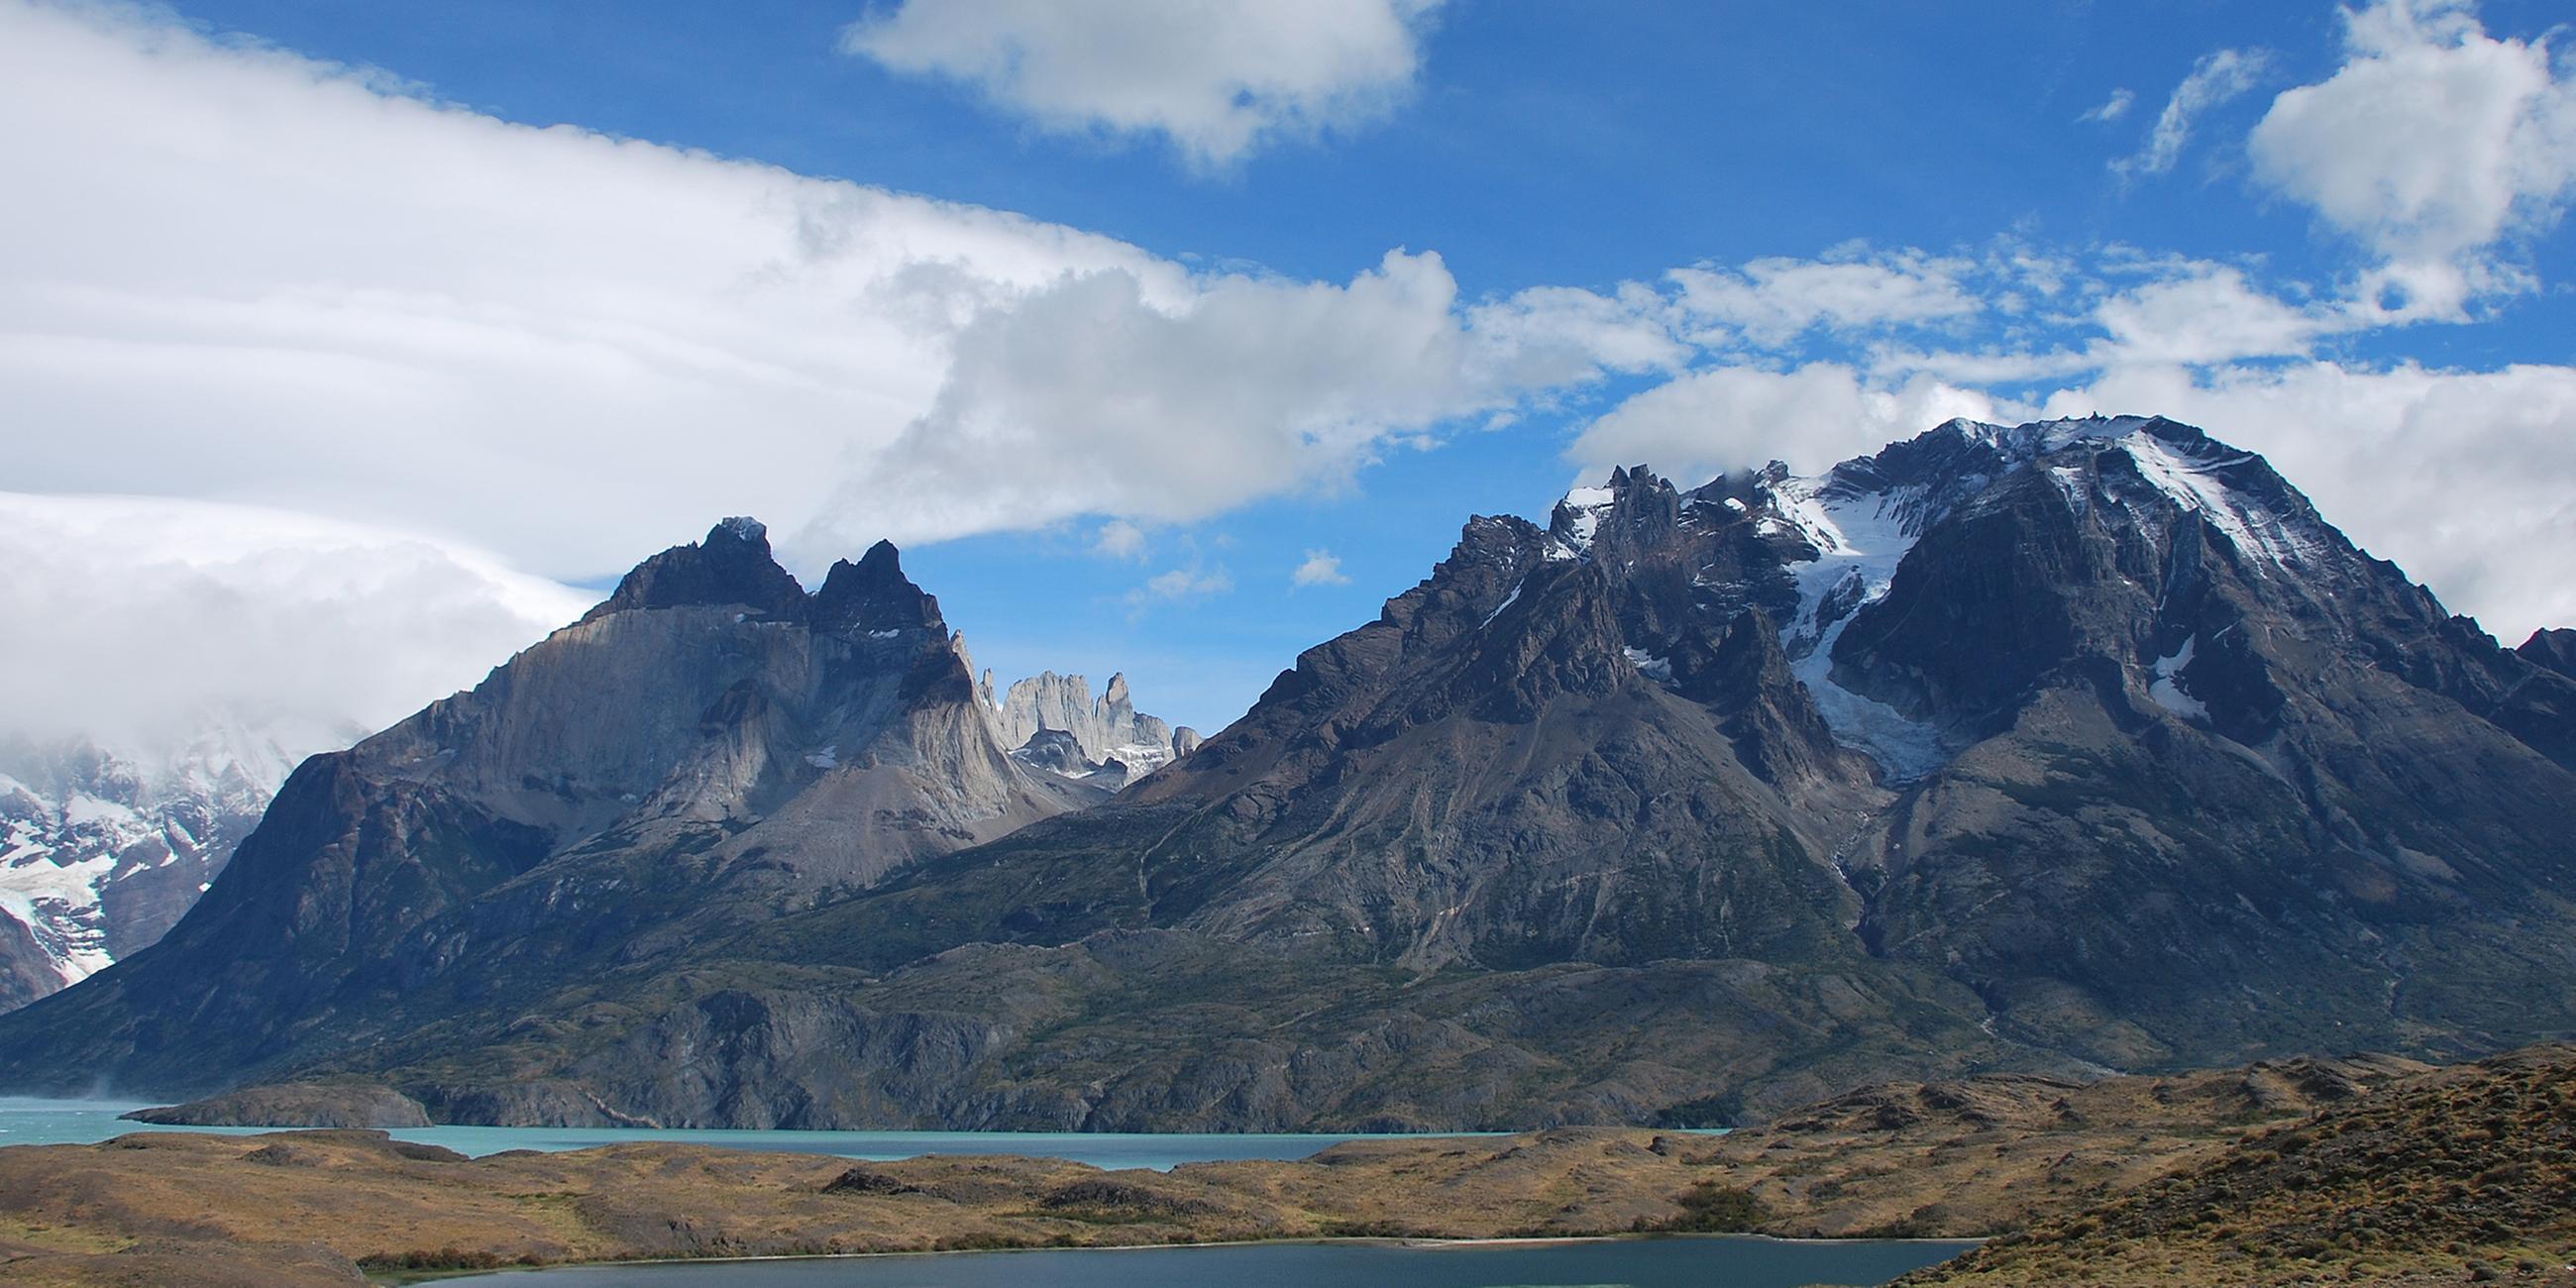 Blick auf den Nationalpark Torres del Paine mit seinen hoch aufragenden Bergen